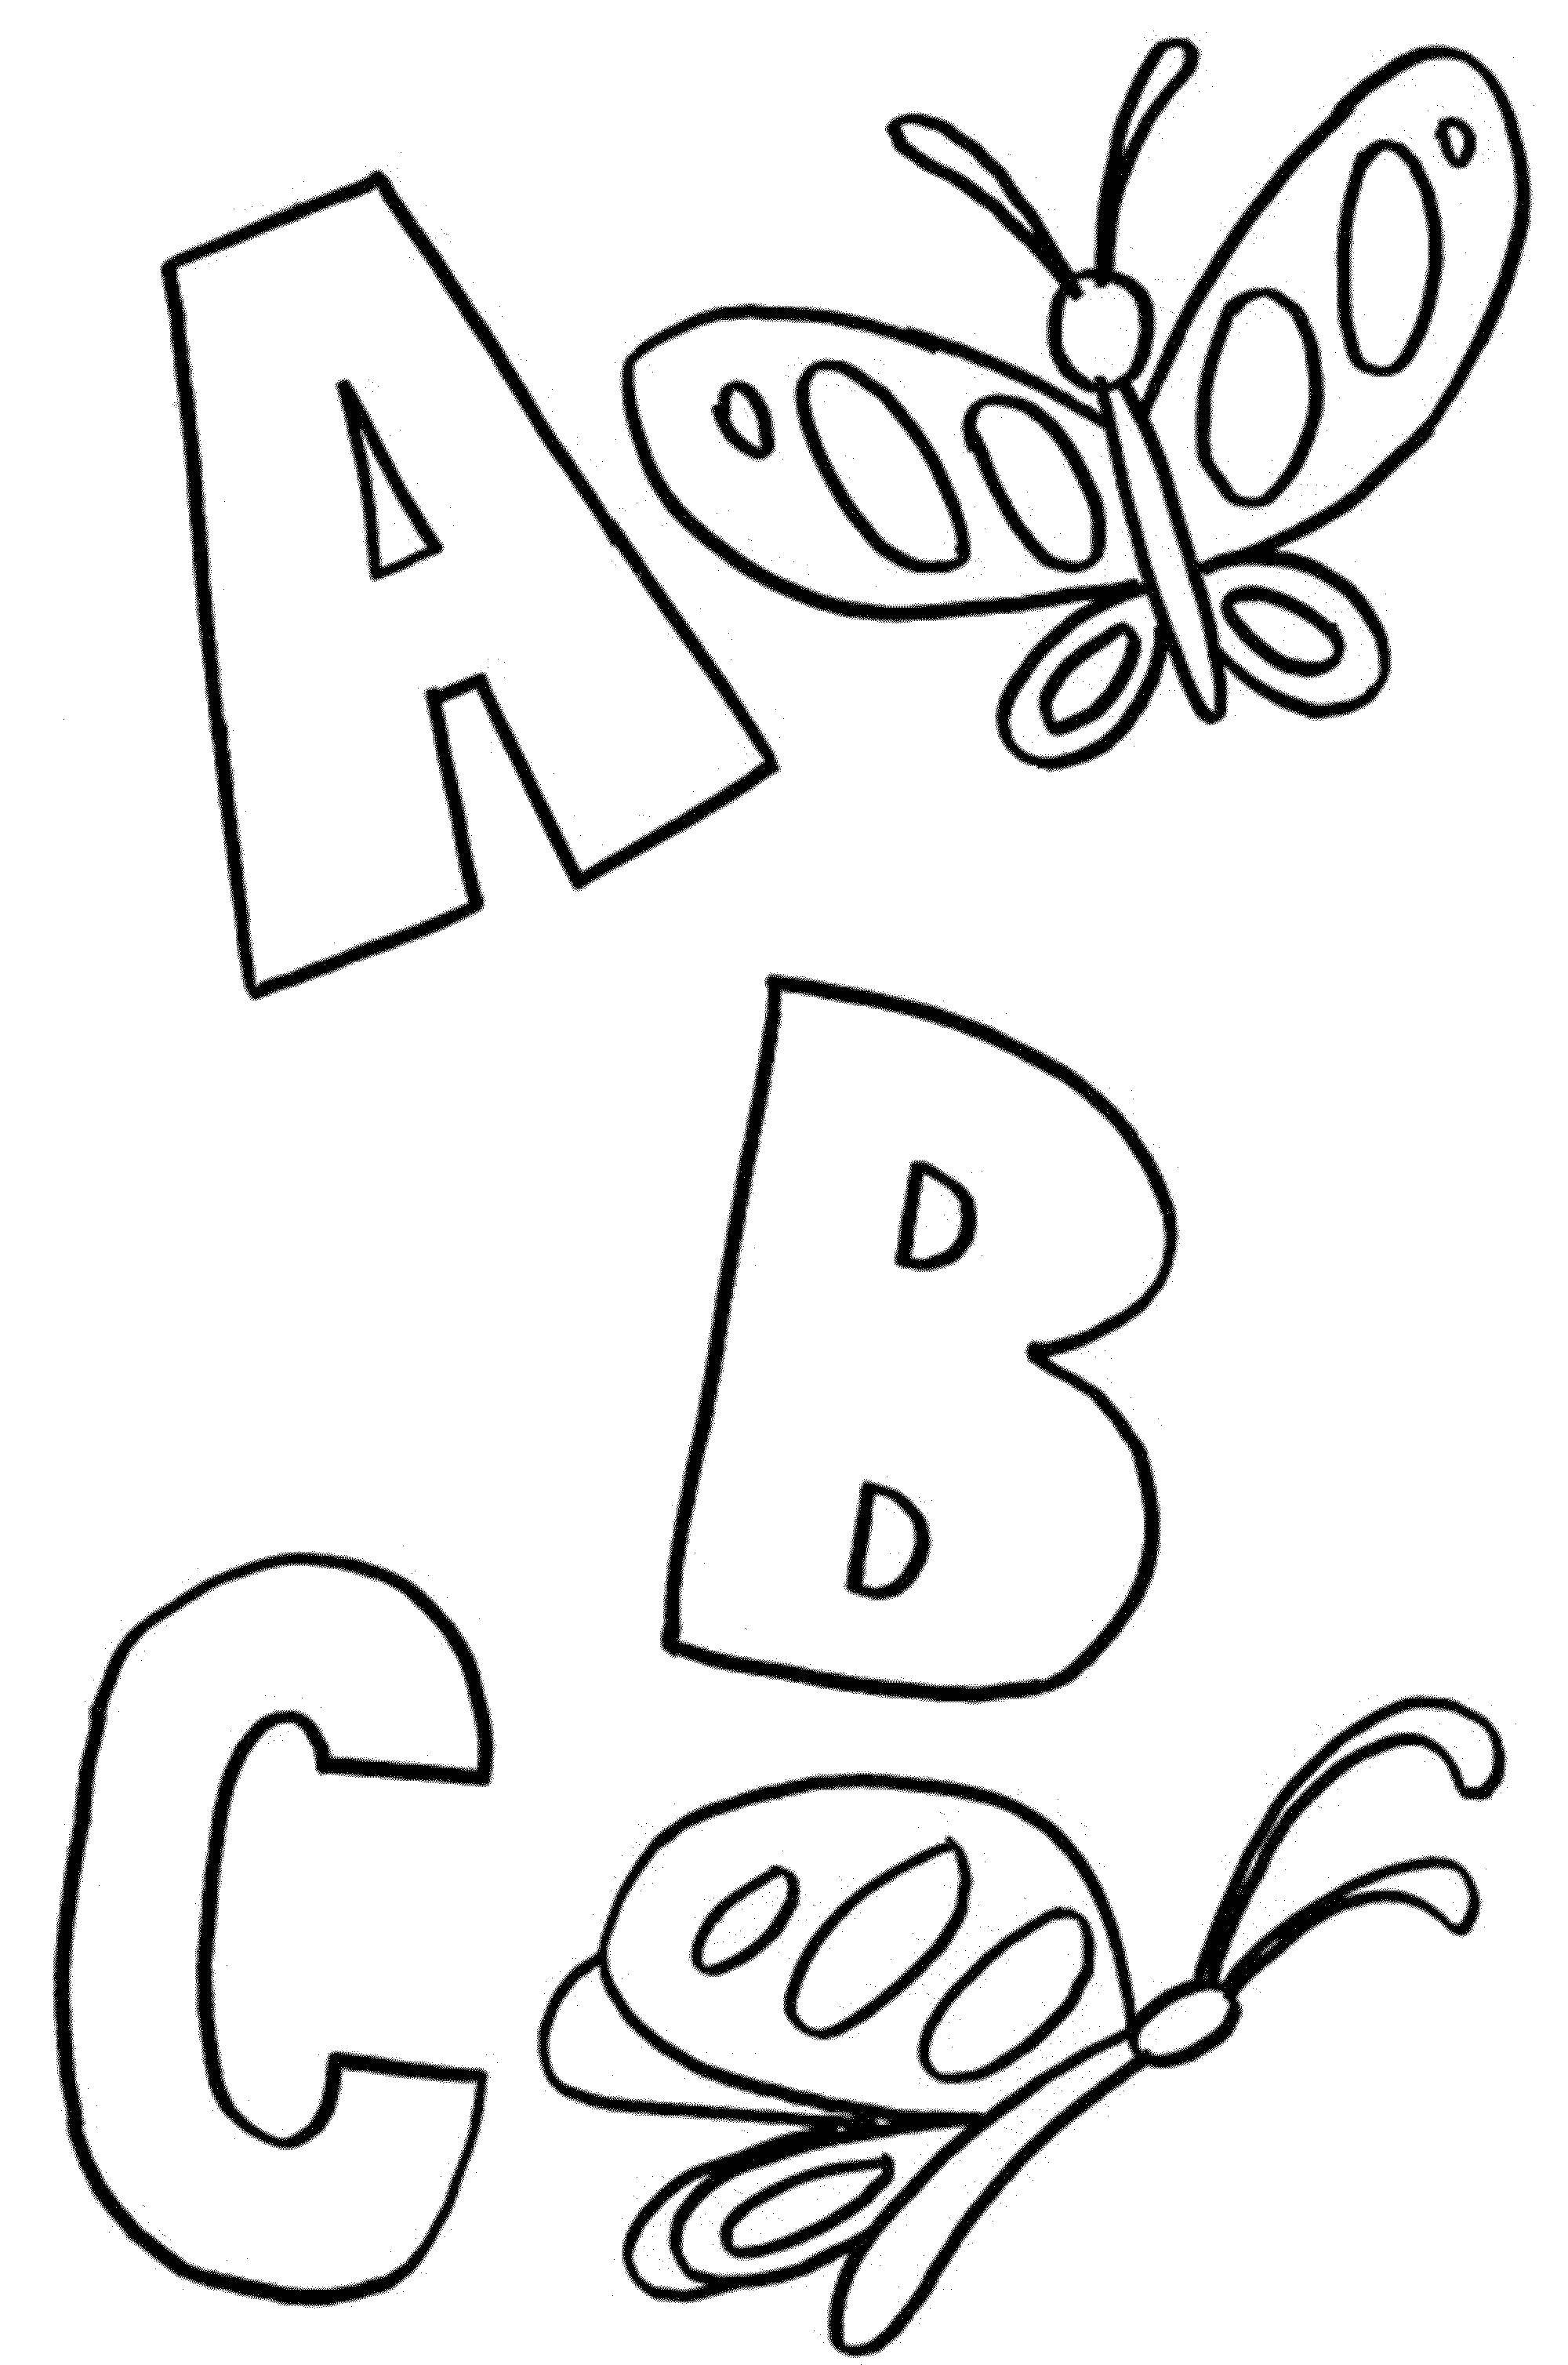 Название: Раскраска A, b, c. Категория: Английский алфавит. Теги: Алфавит, буквы, слова.